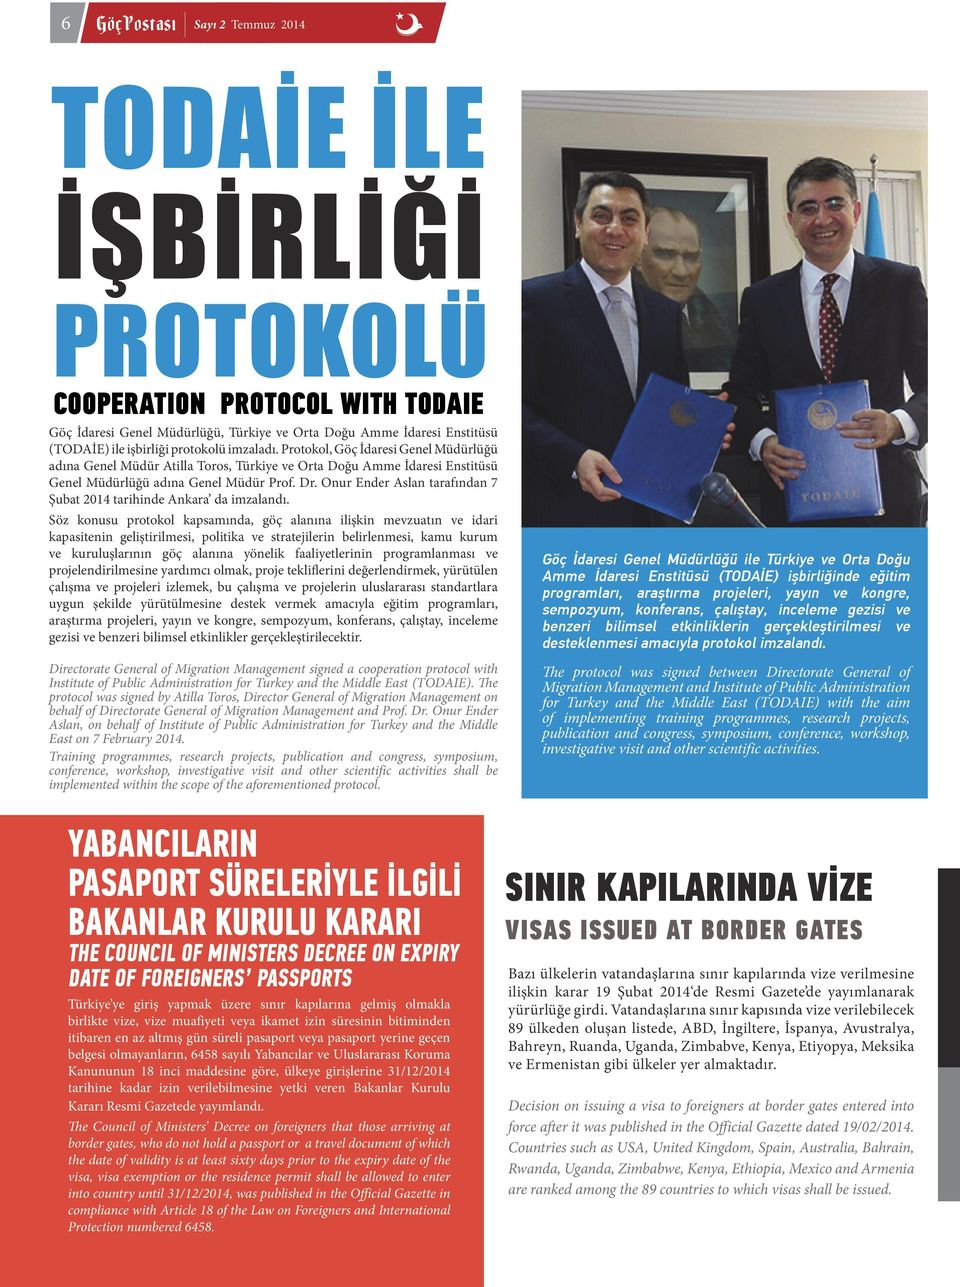 Onur Ender Aslan tarafından 7 Şubat 2014 tarihinde Ankara da imzalandı.